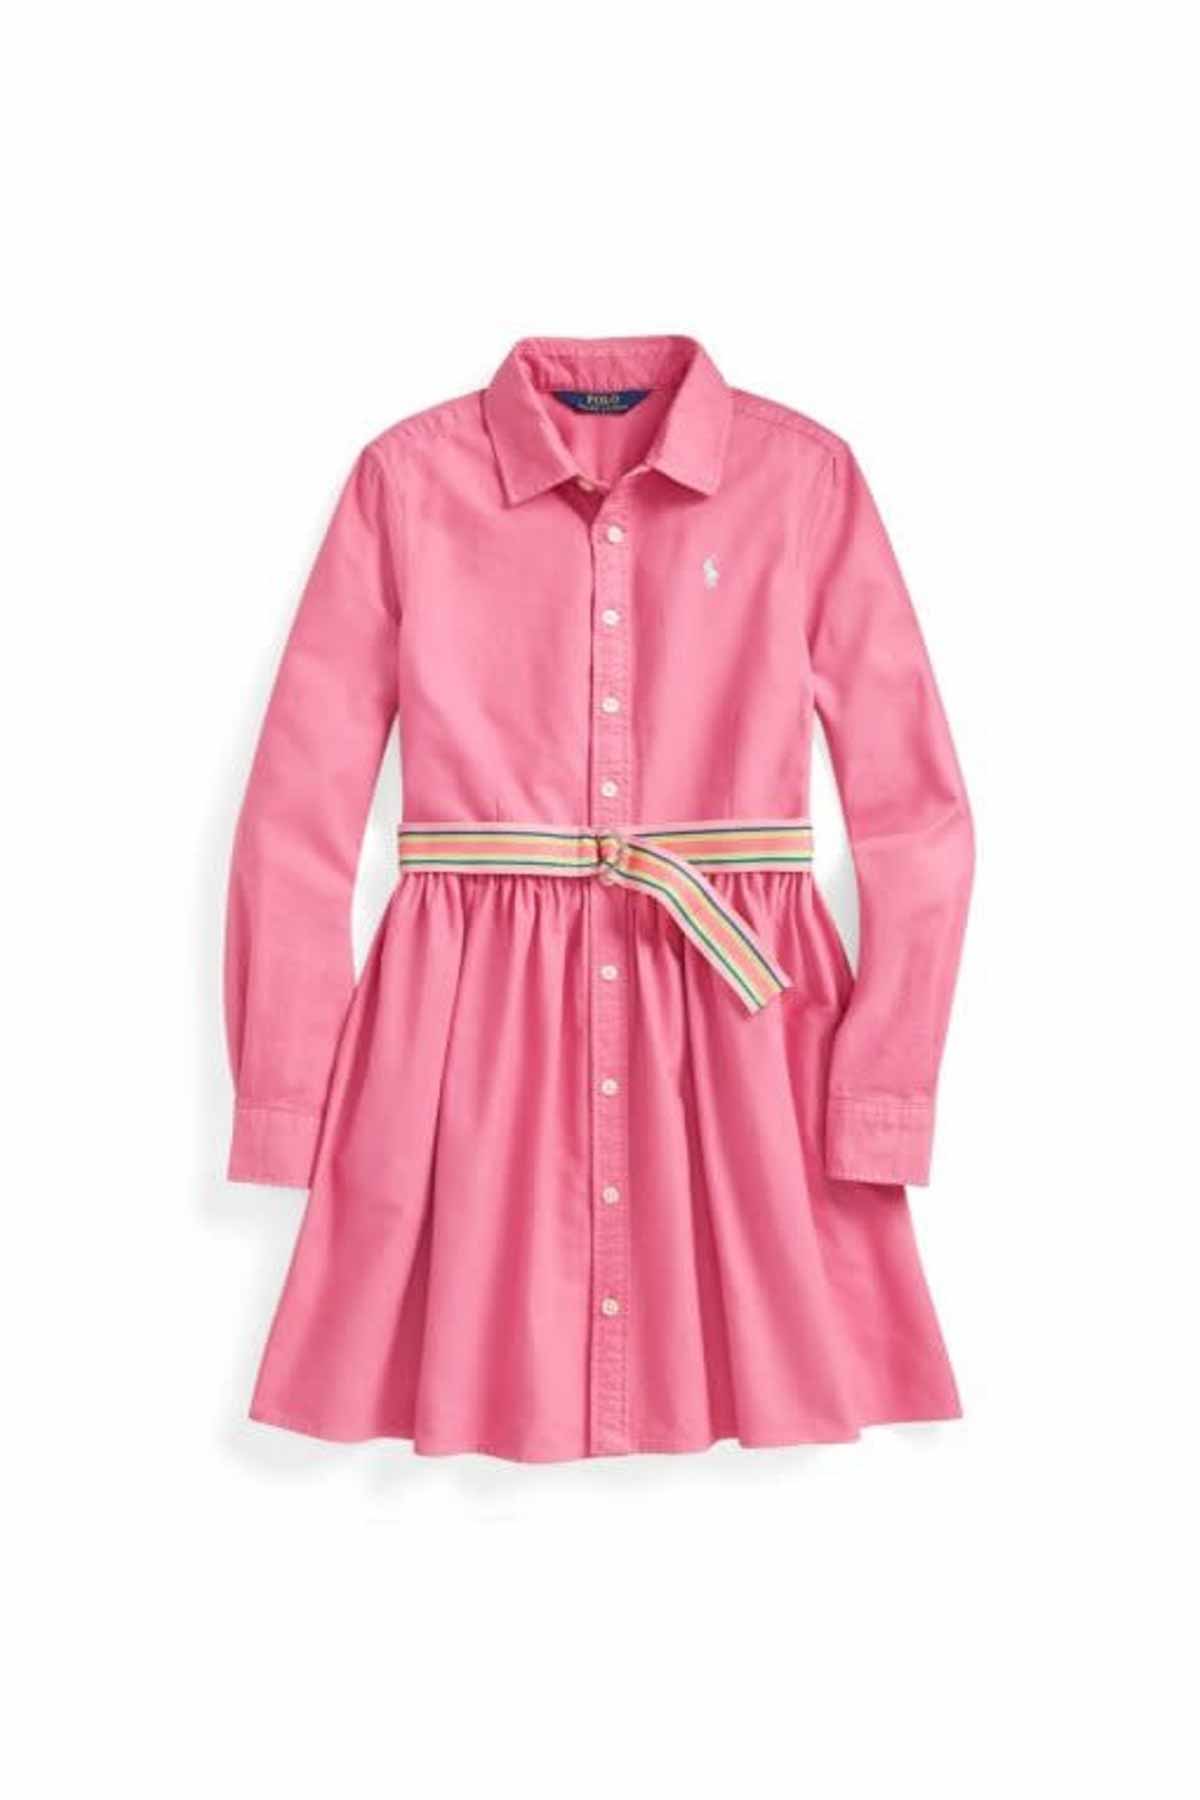 Polo Ralph Lauren 3-4 Yaş Kız Çocuk Kemerli Gömlek Elbise-Libas Trendy Fashion Store